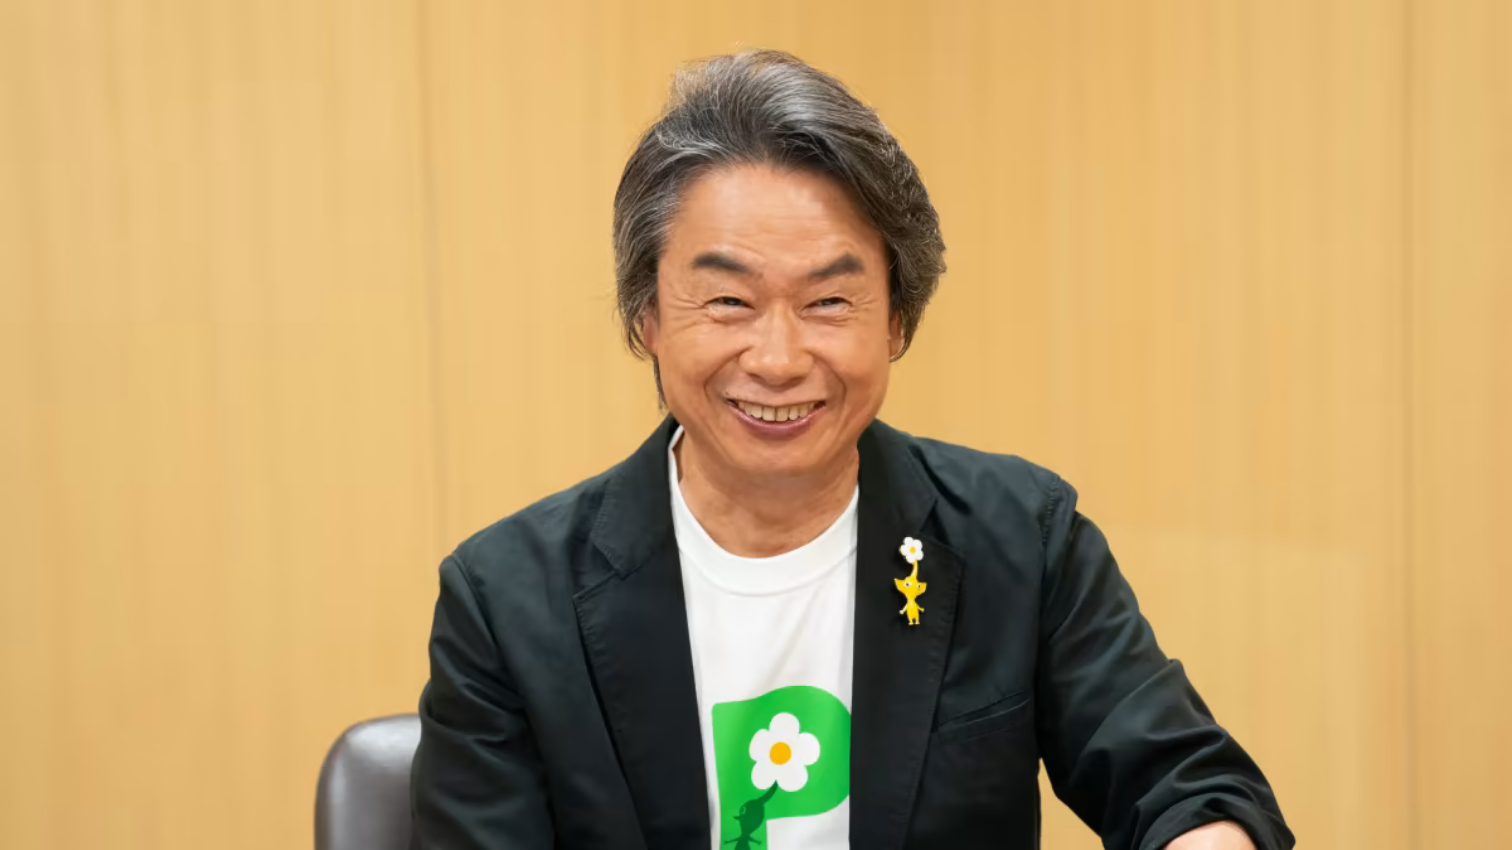 Shigeru Miyamoto Is Making Movies About Pikmin